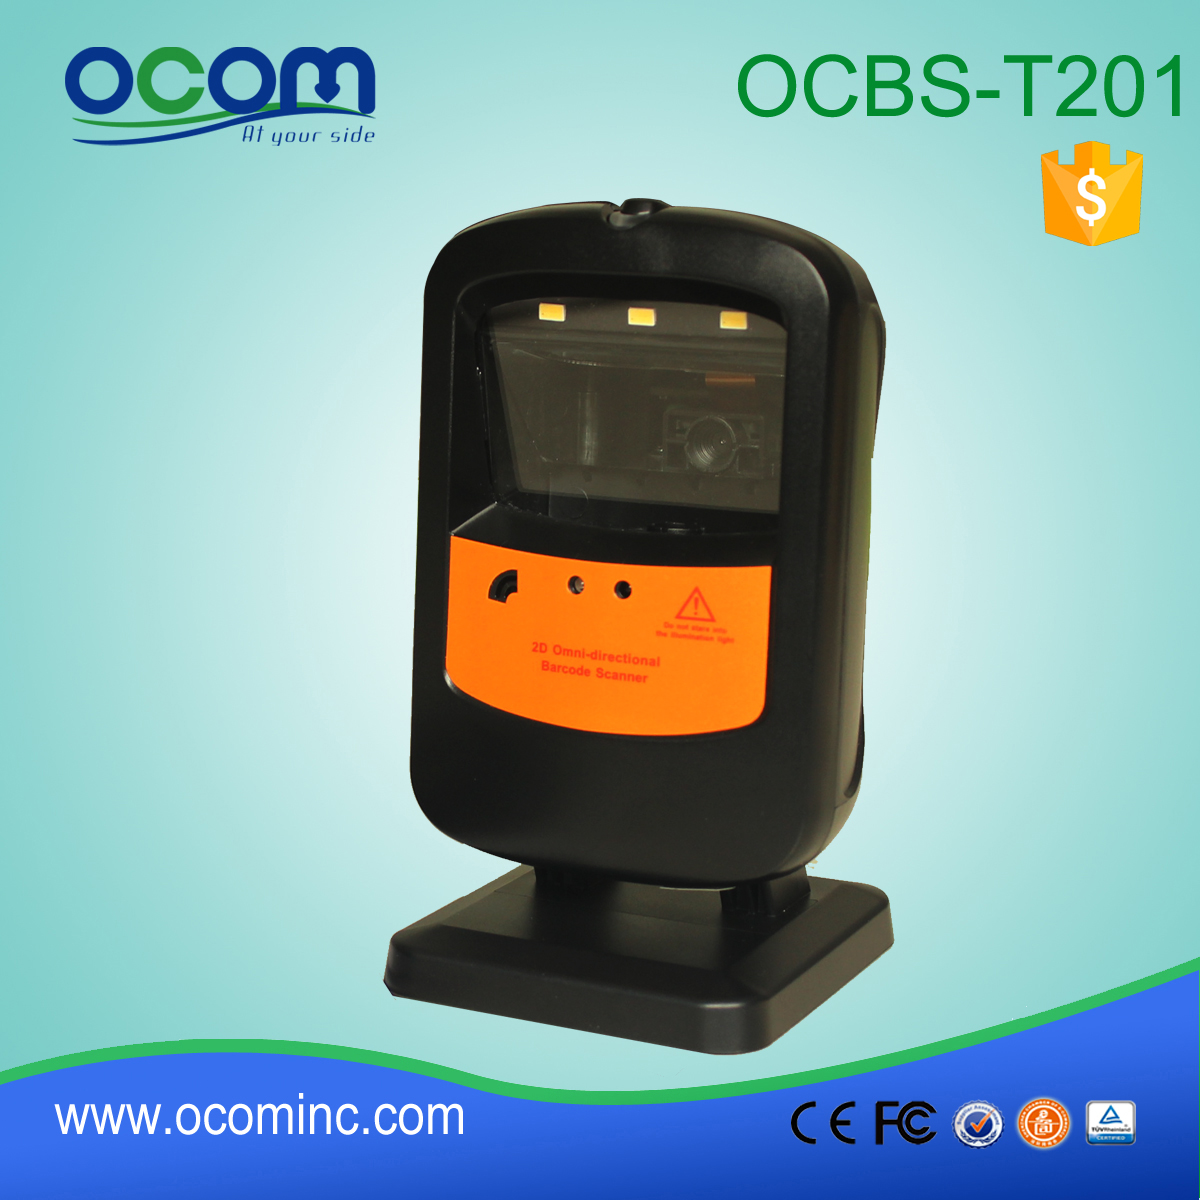 OCBs-T201: omnidirecional máquina de scanner de código de barras, peças do scanner de código de barras